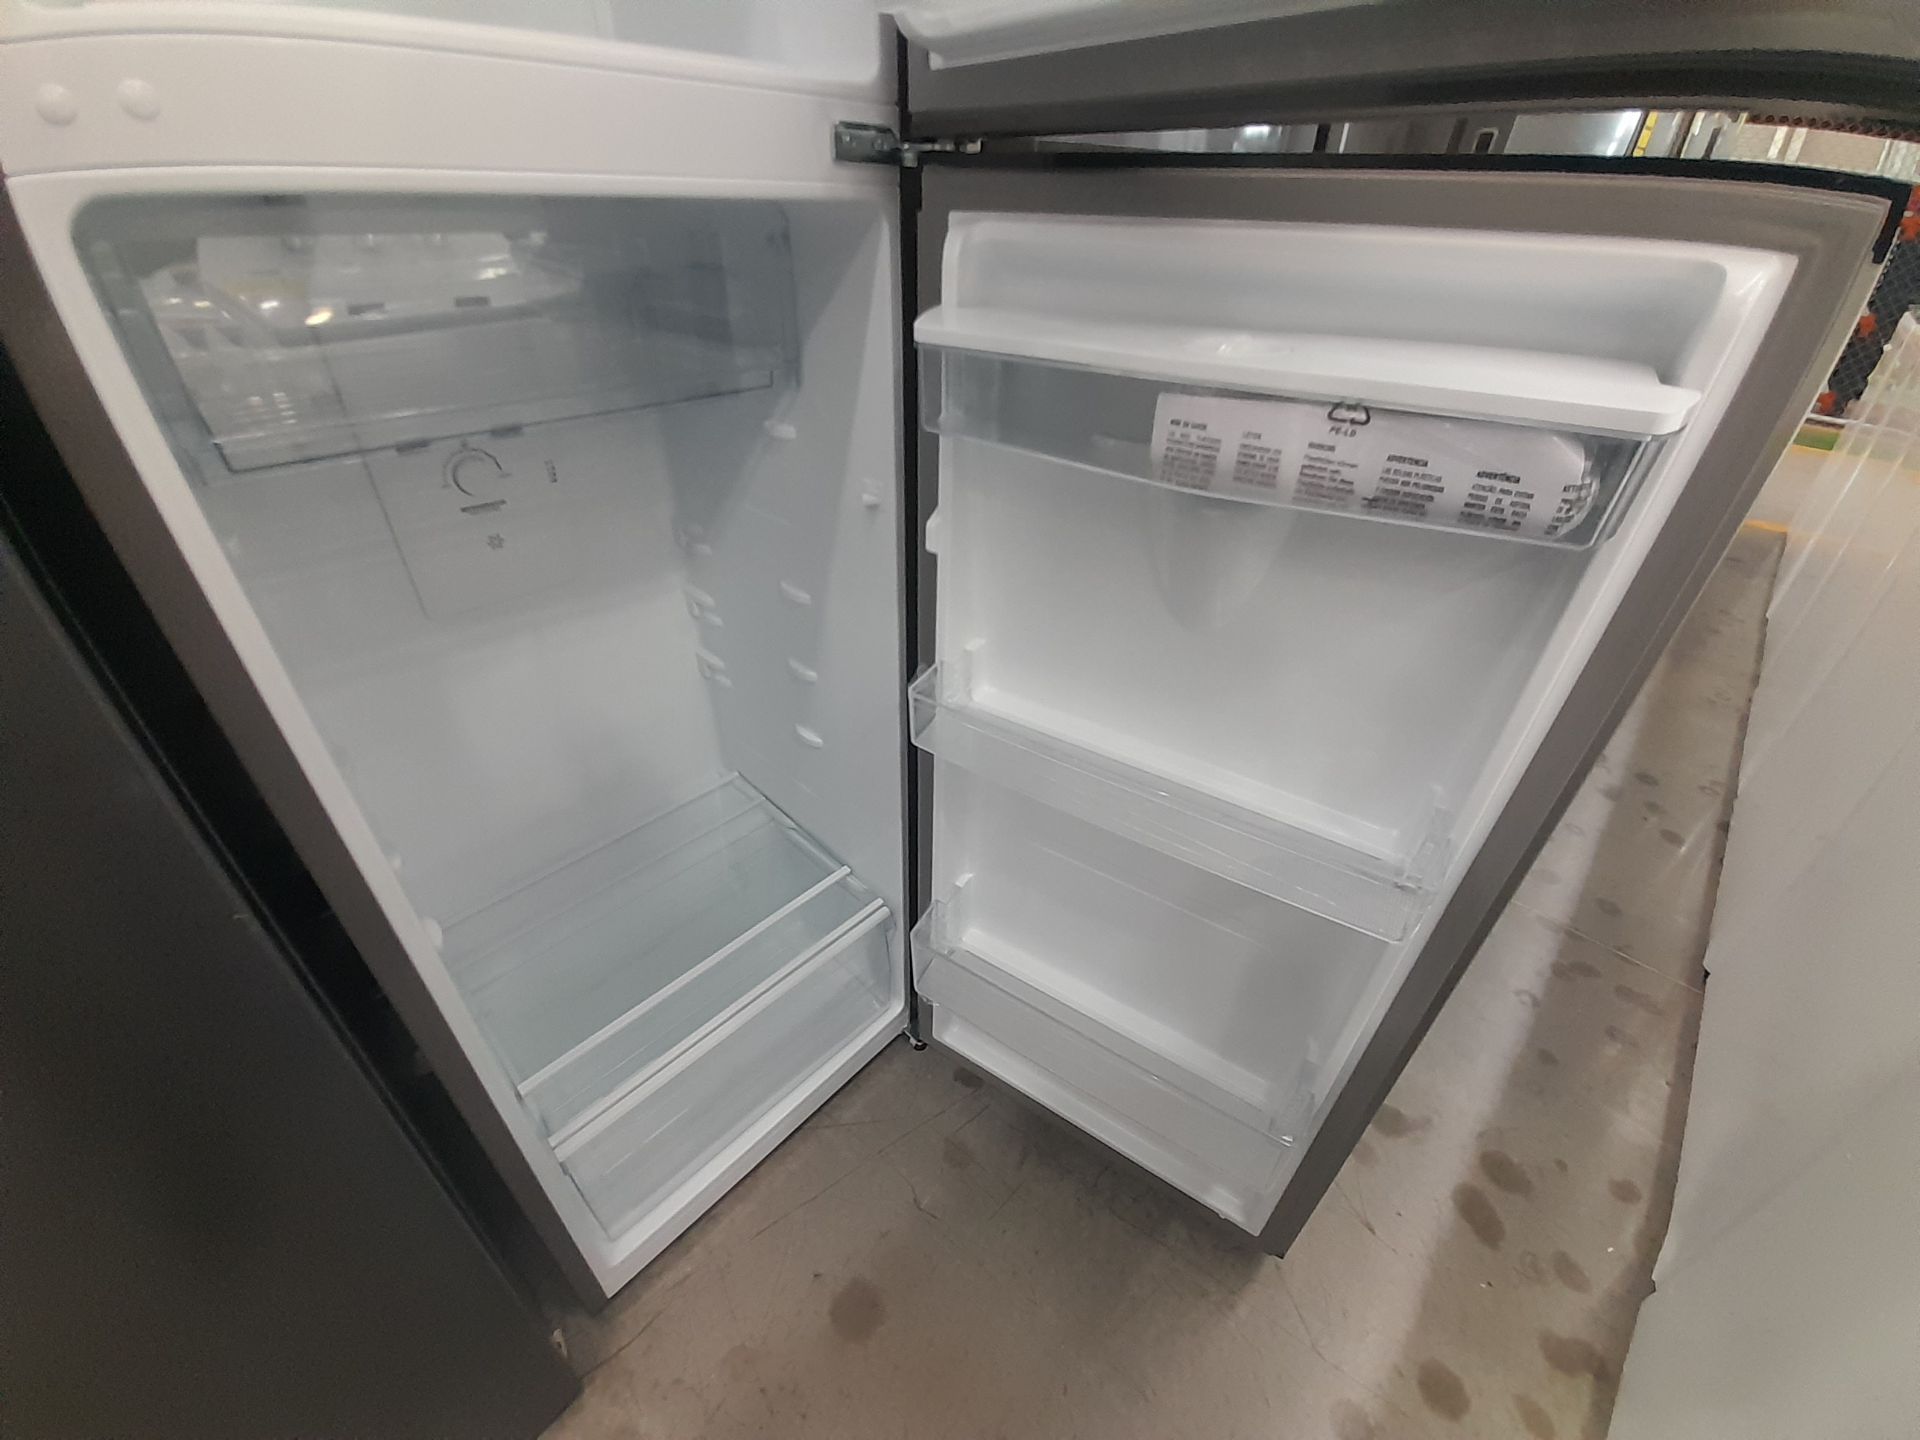 Lote de 2 refrigeradores contiene: 1 Refrigerador Marca WINIA, Modelo WRT9000AMMX, Color GRIS; - Image 7 of 8